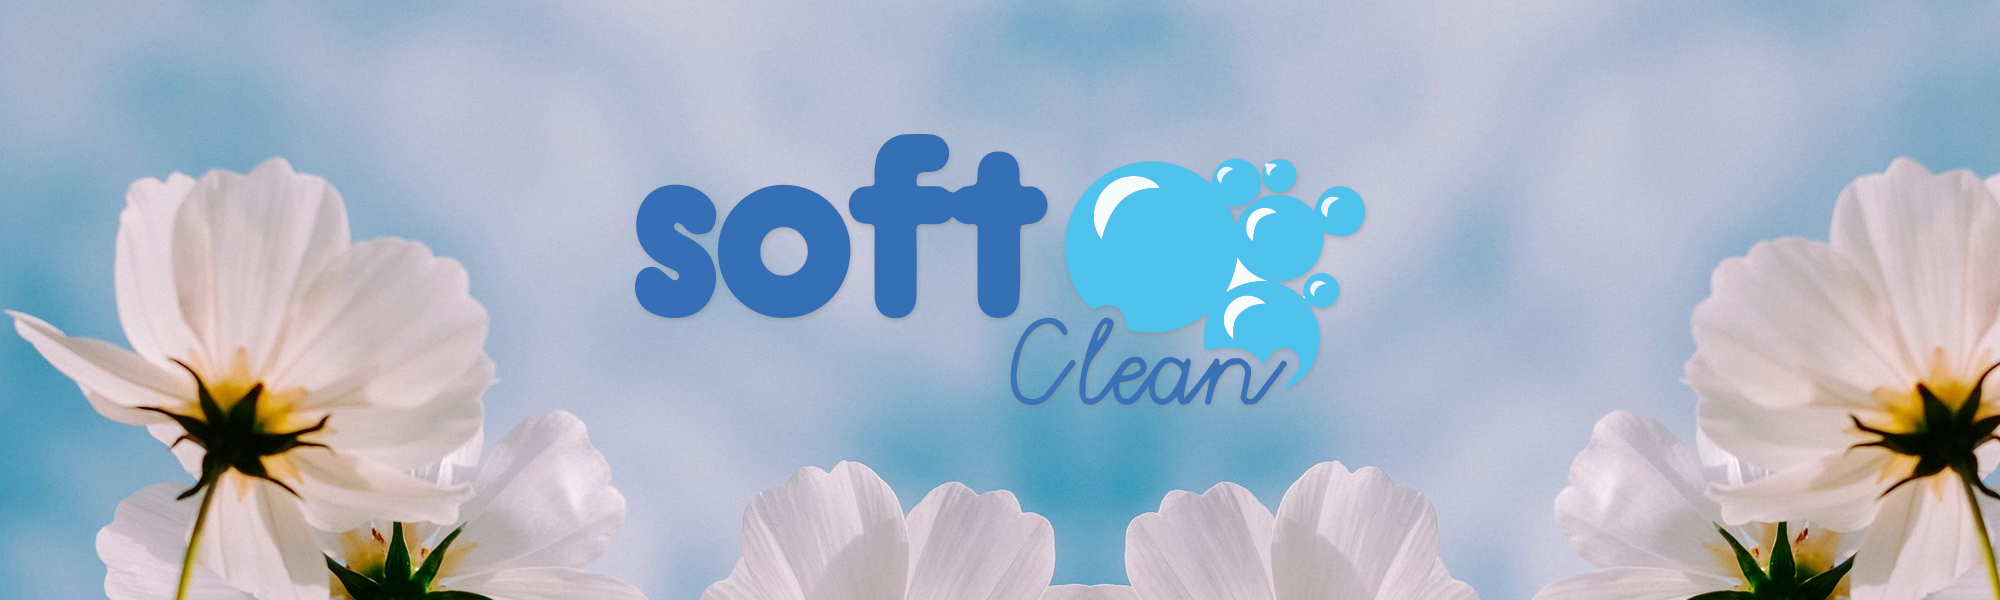 Soft Clean